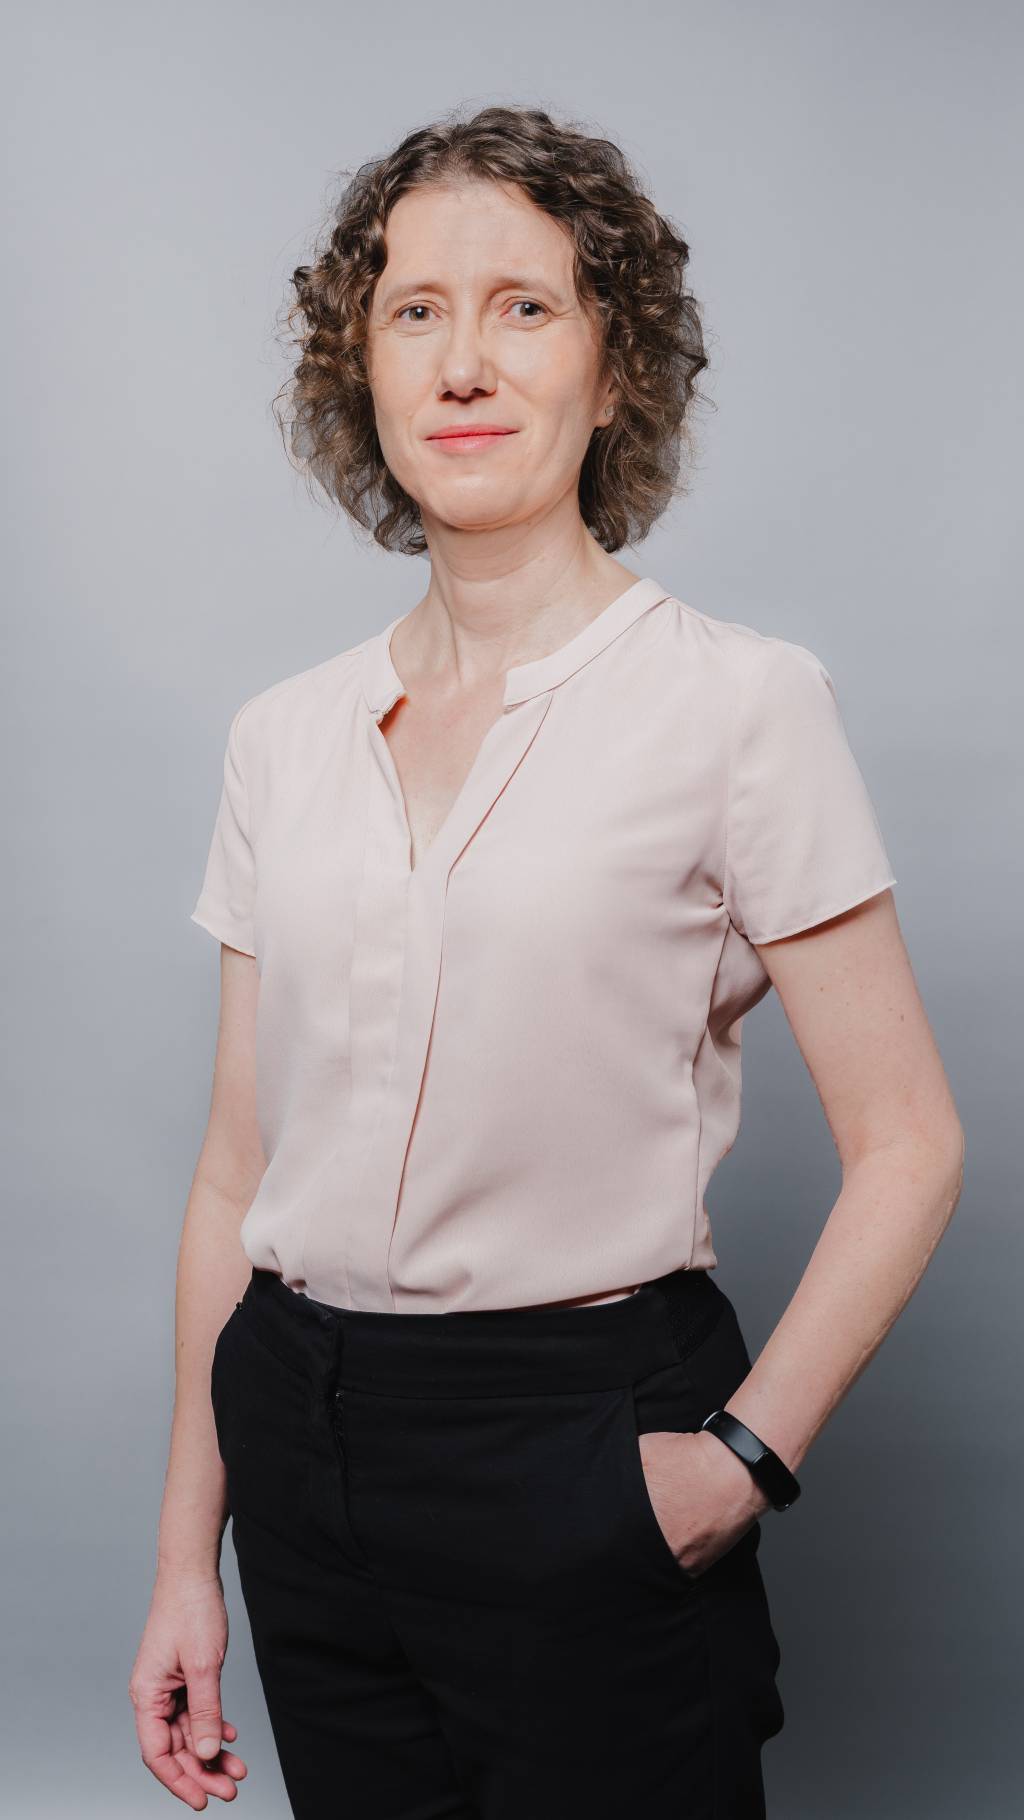 Mulher cientista de cabelos loiros encaracolados posa com blusa bege e calça preta com uma mão no bolso